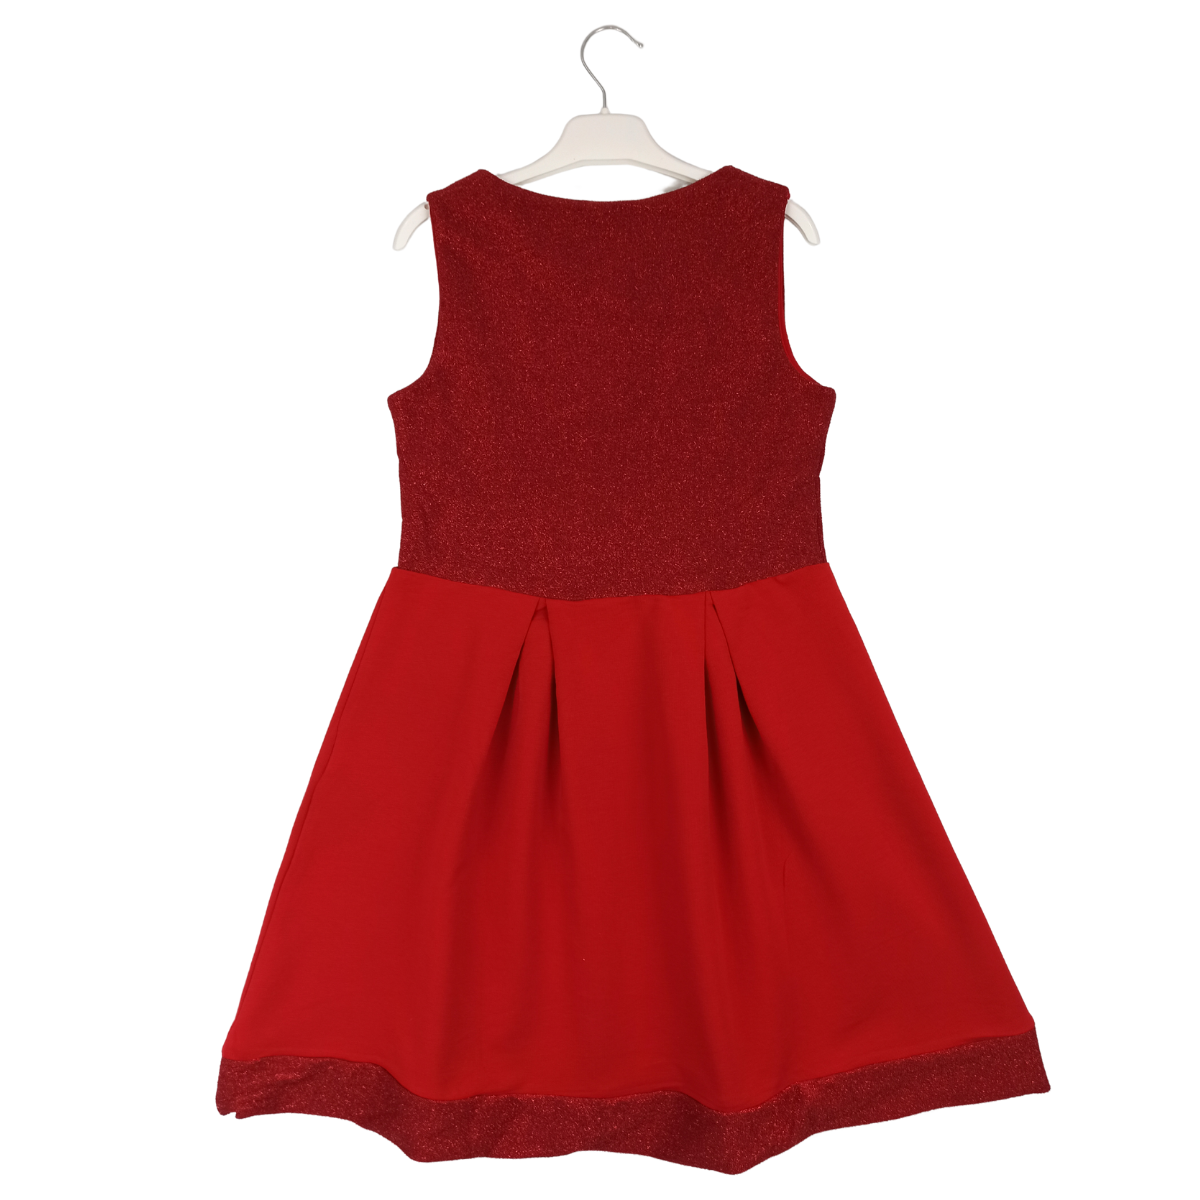 Mädchen Kleid "Brillanz"-rot/silber/schwarz, Große 104/152